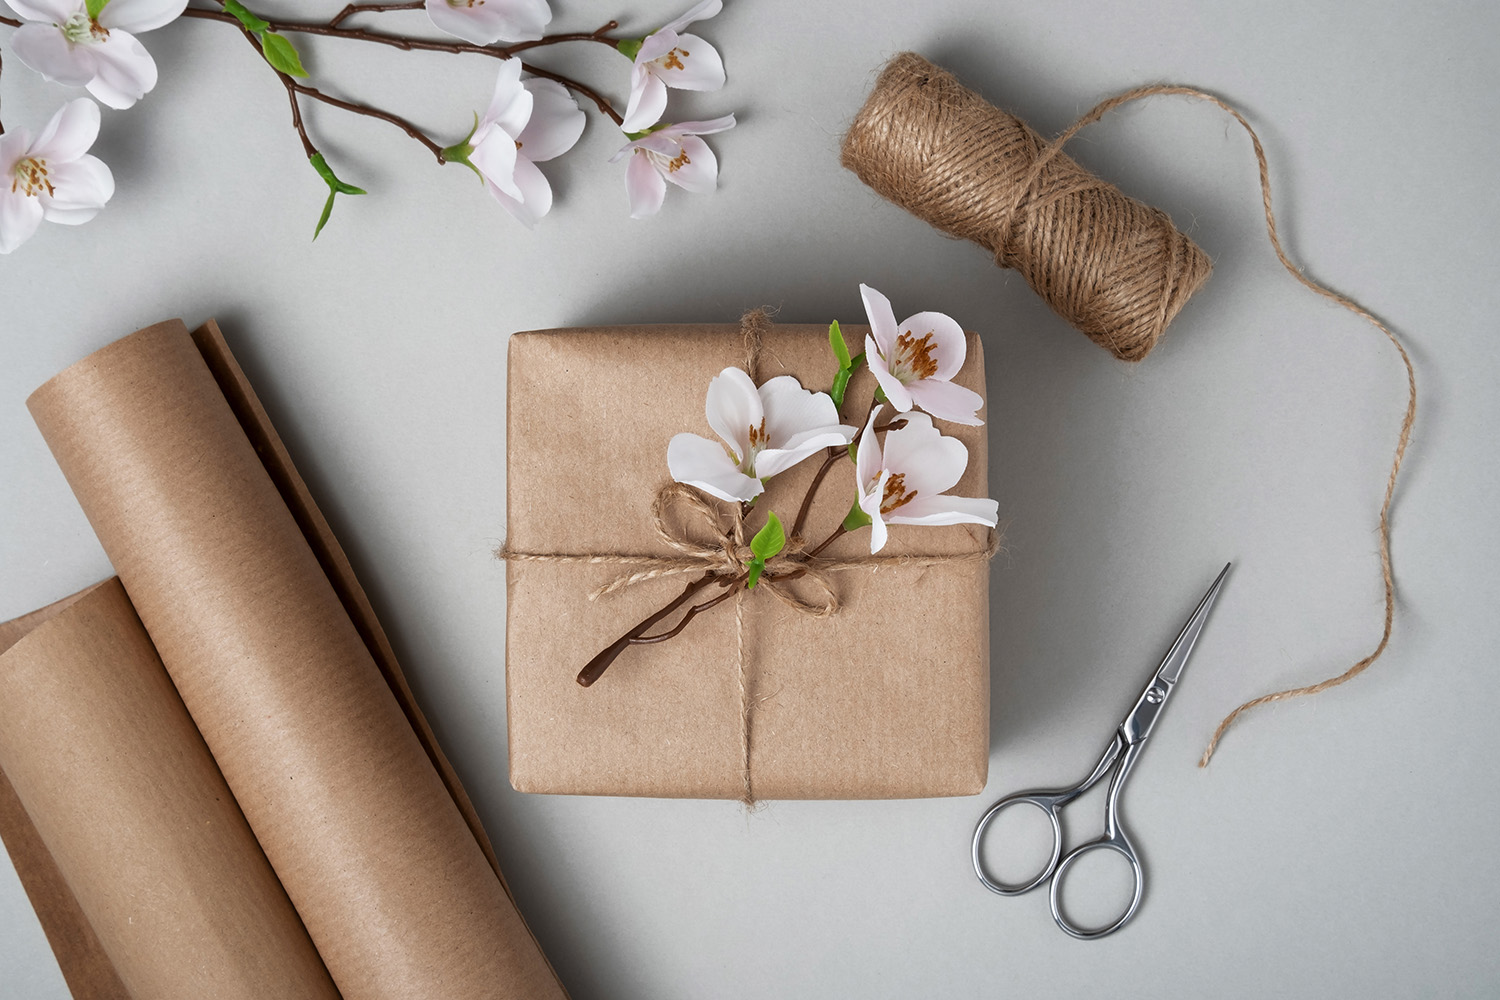 Ett presentpaket med blommor och brunt papper, sax och snöre på ljus bakgrund